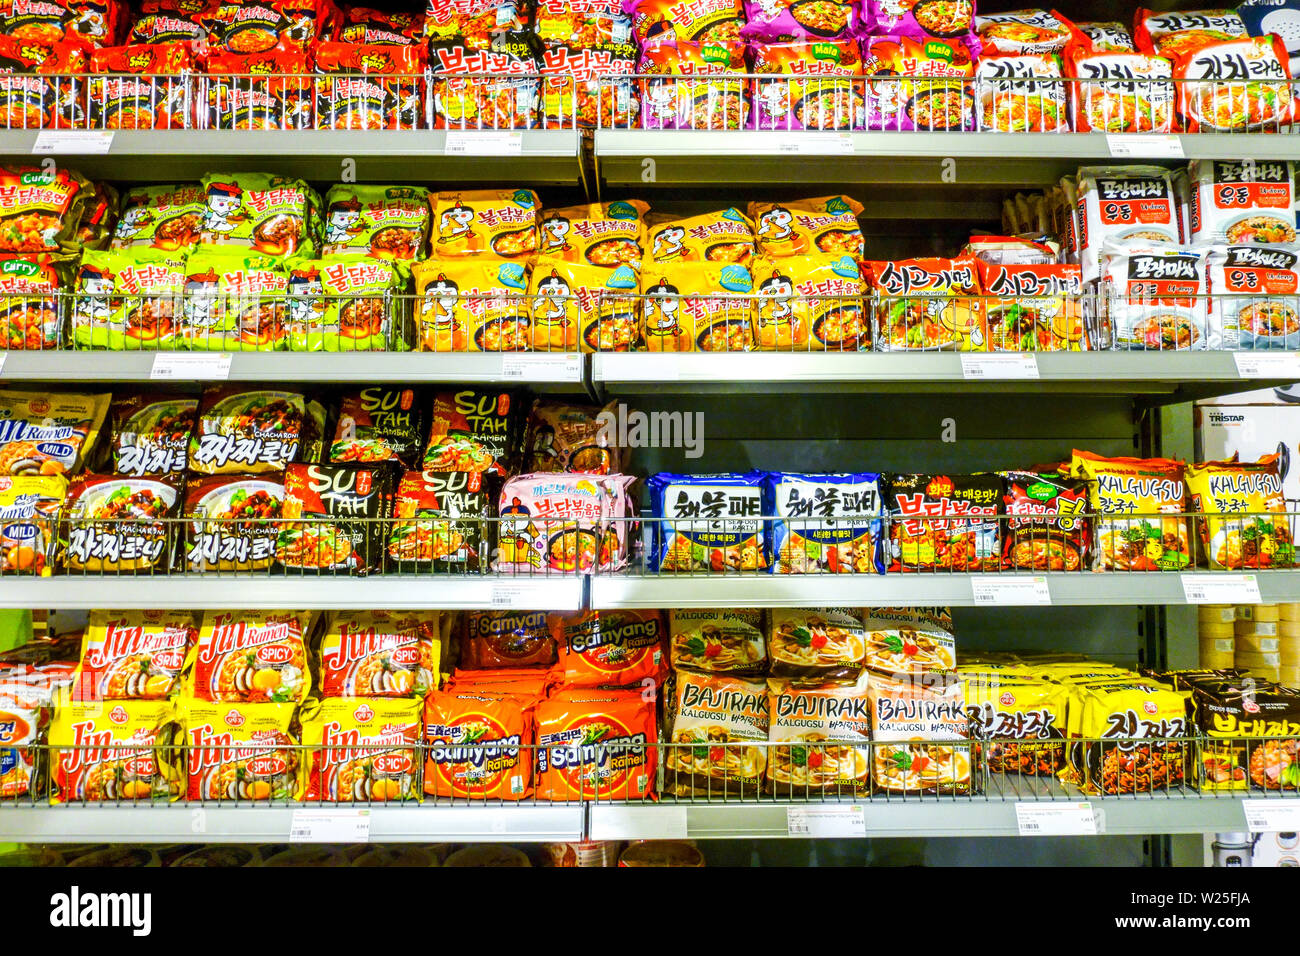 Supermarché asiatique asie 'Go', les rayons des supermarchés de la soupe instantanée, Dresden, Allemagne Banque D'Images